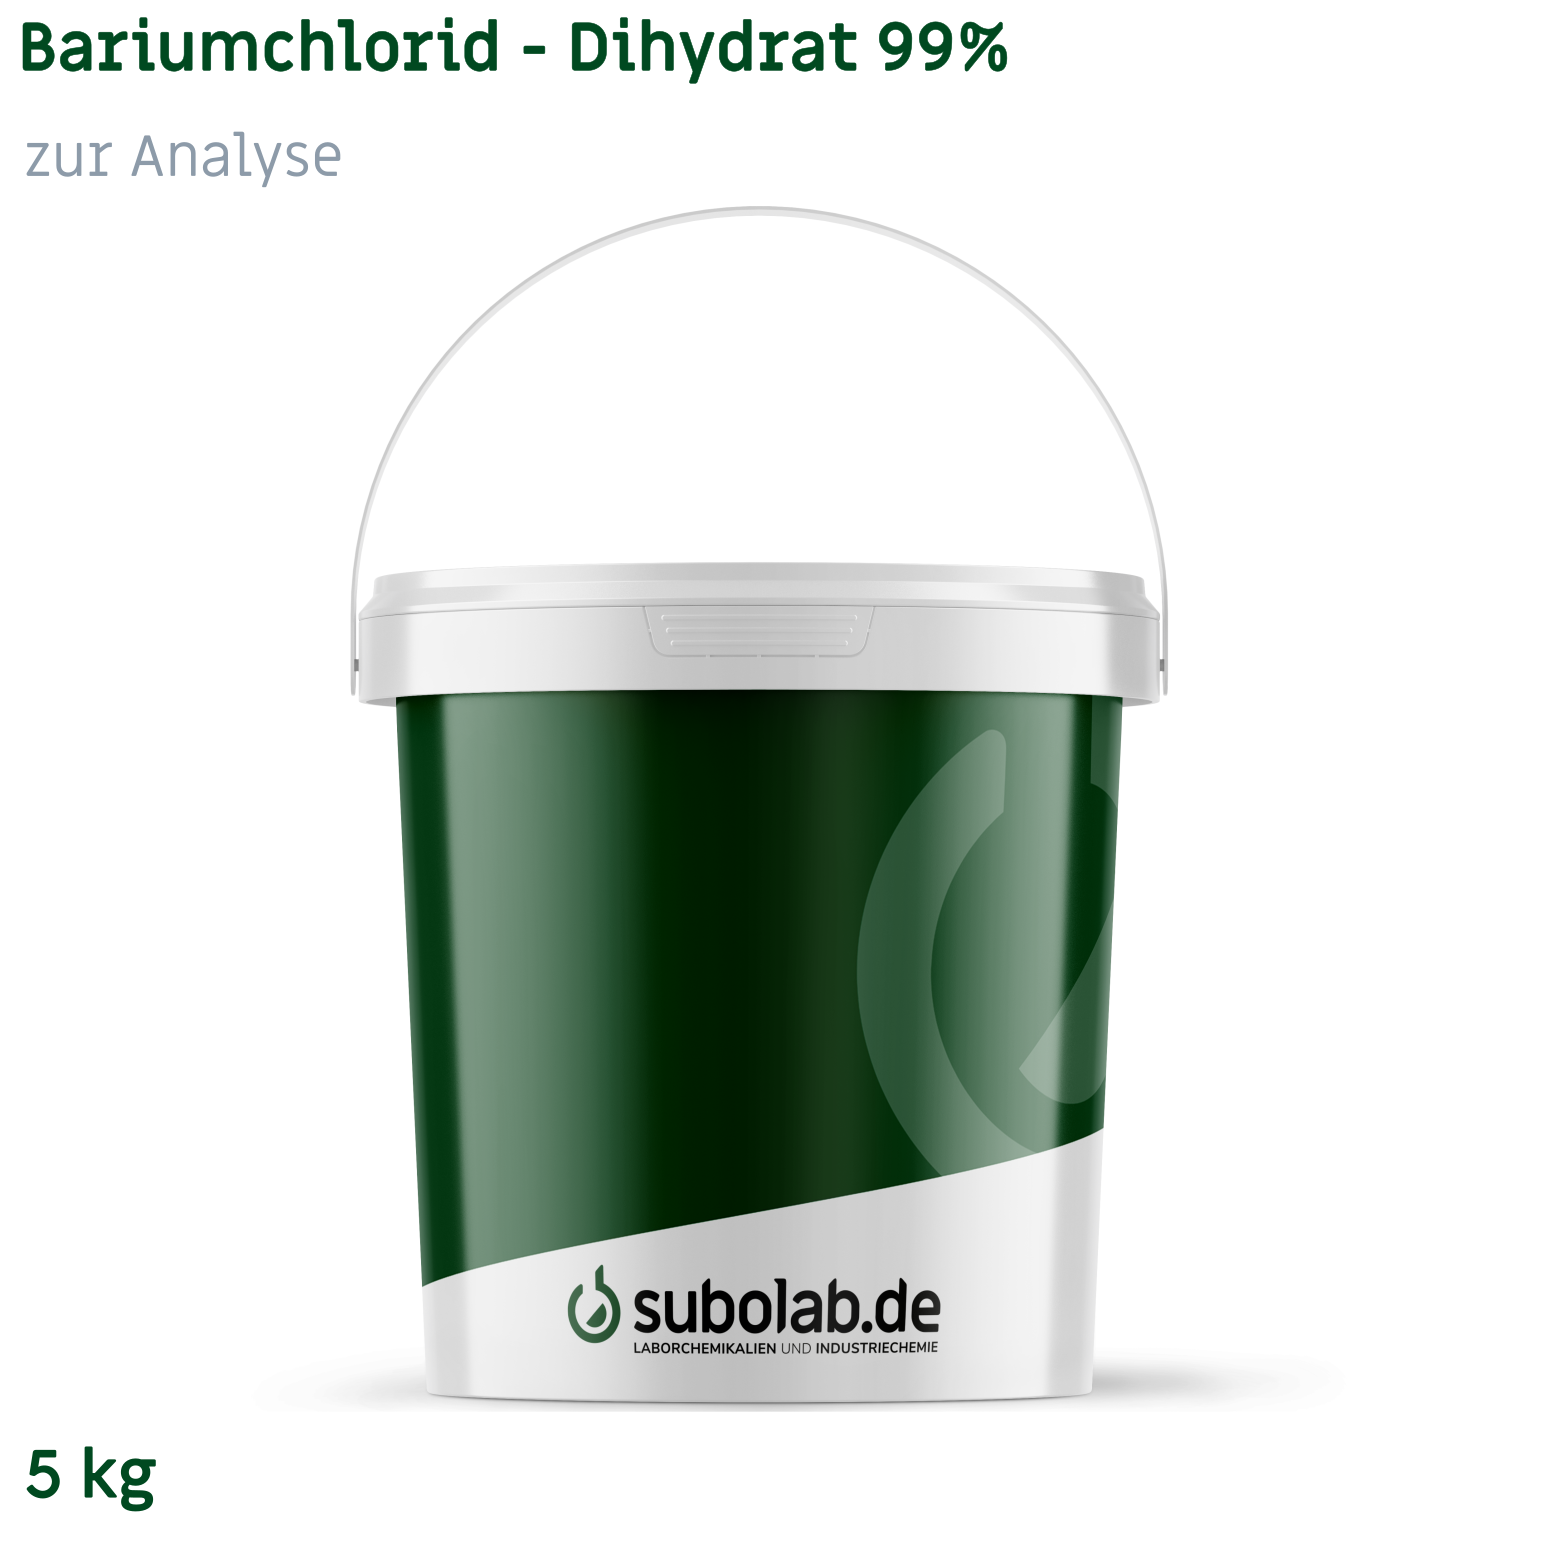 Bild von Bariumchlorid - Dihydrat 99% zur Analyse (5 kg)